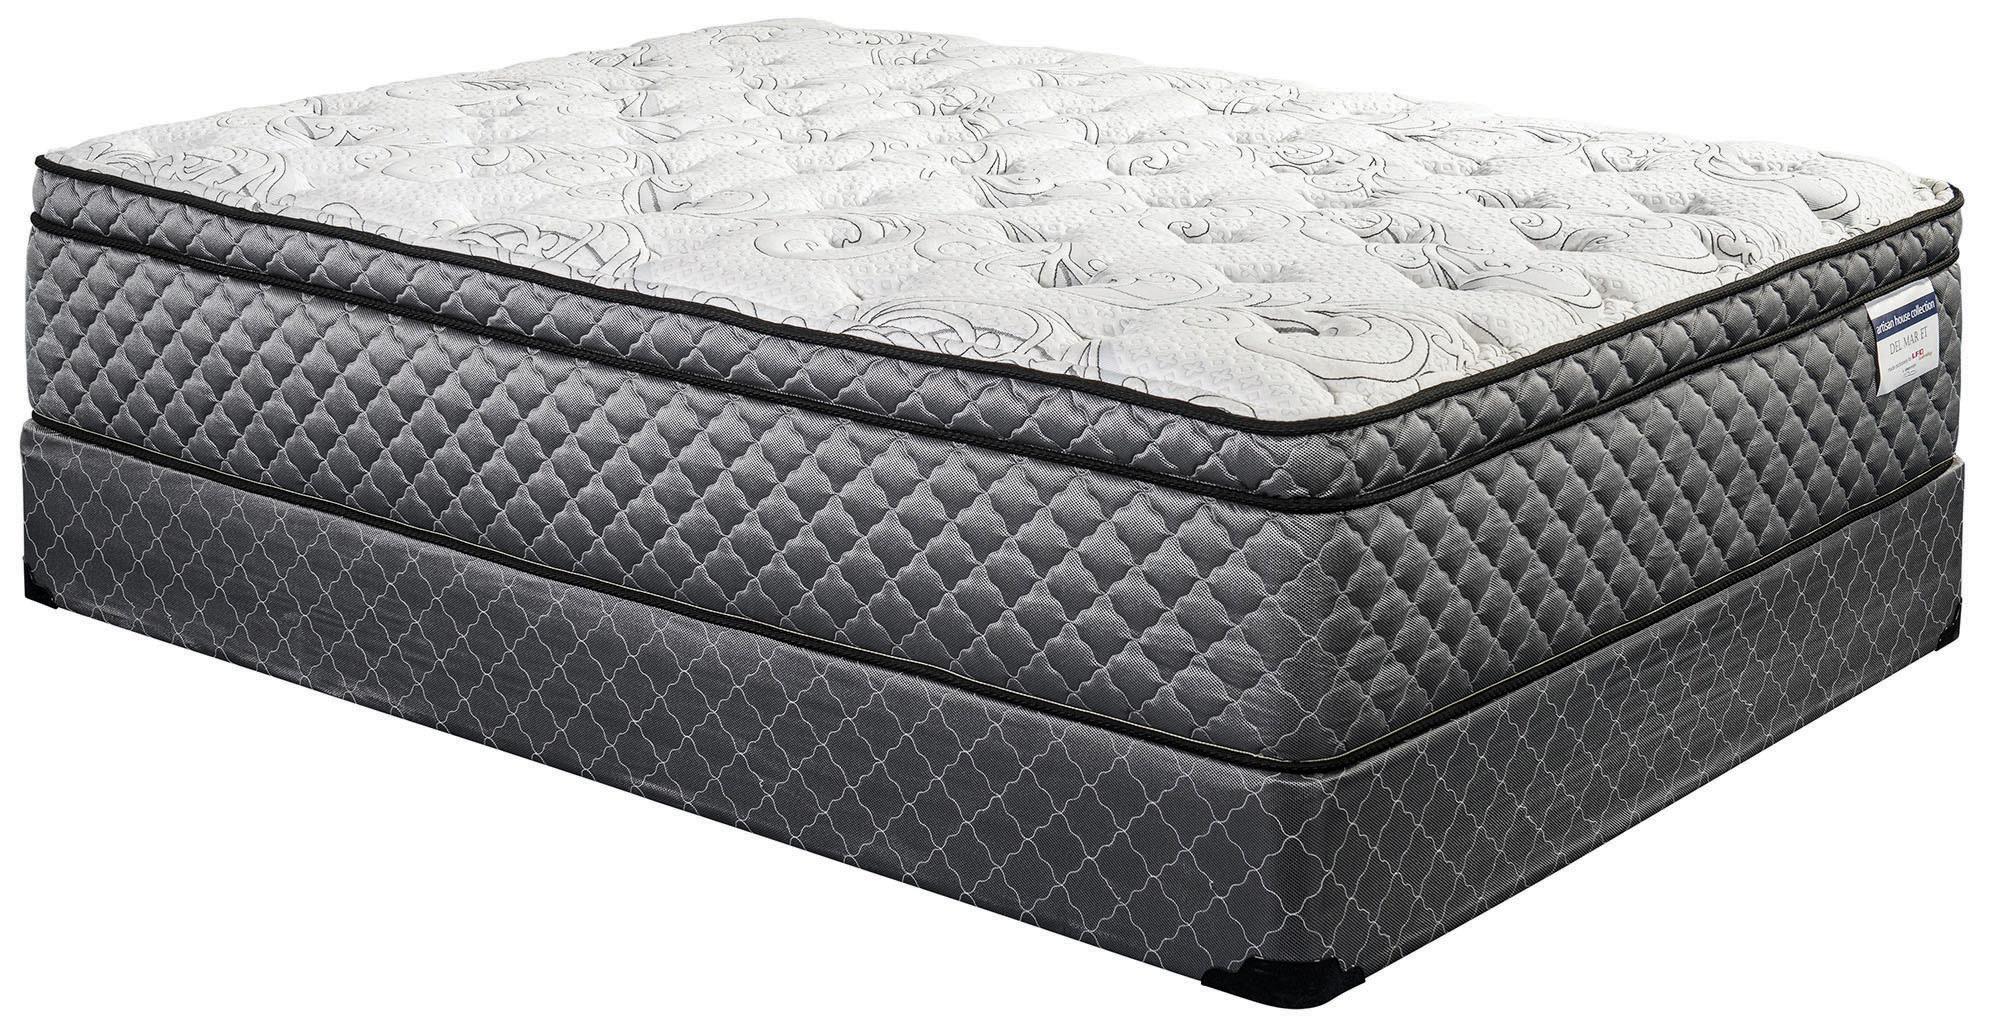 sleep designs mattress reviews